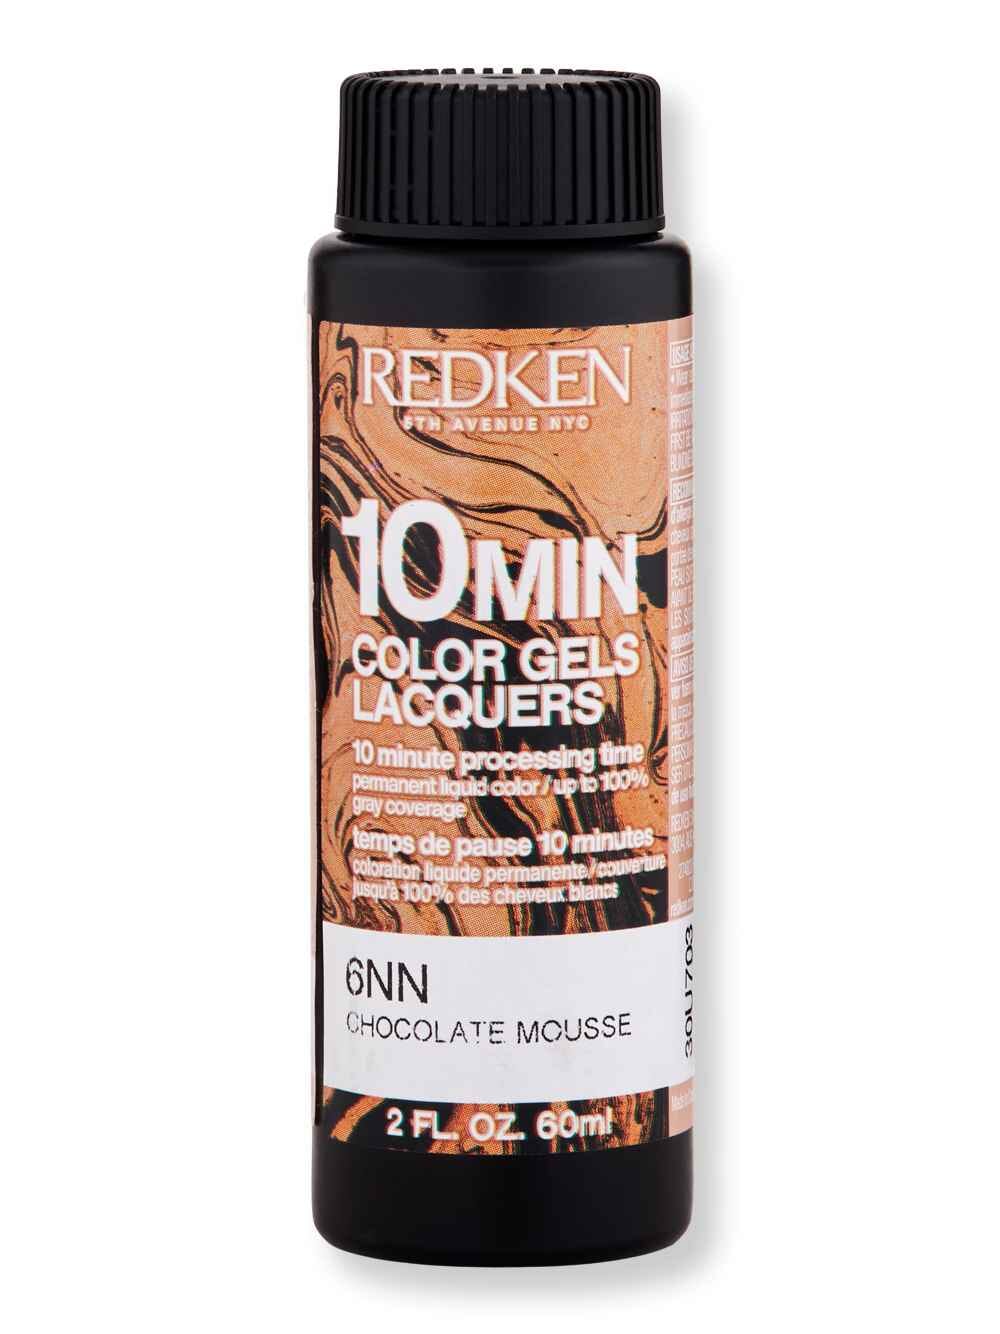 Redken Redken 10 Min Color Gel Lacquers 2 oz6NN Chocolate Mousse Hair Color 